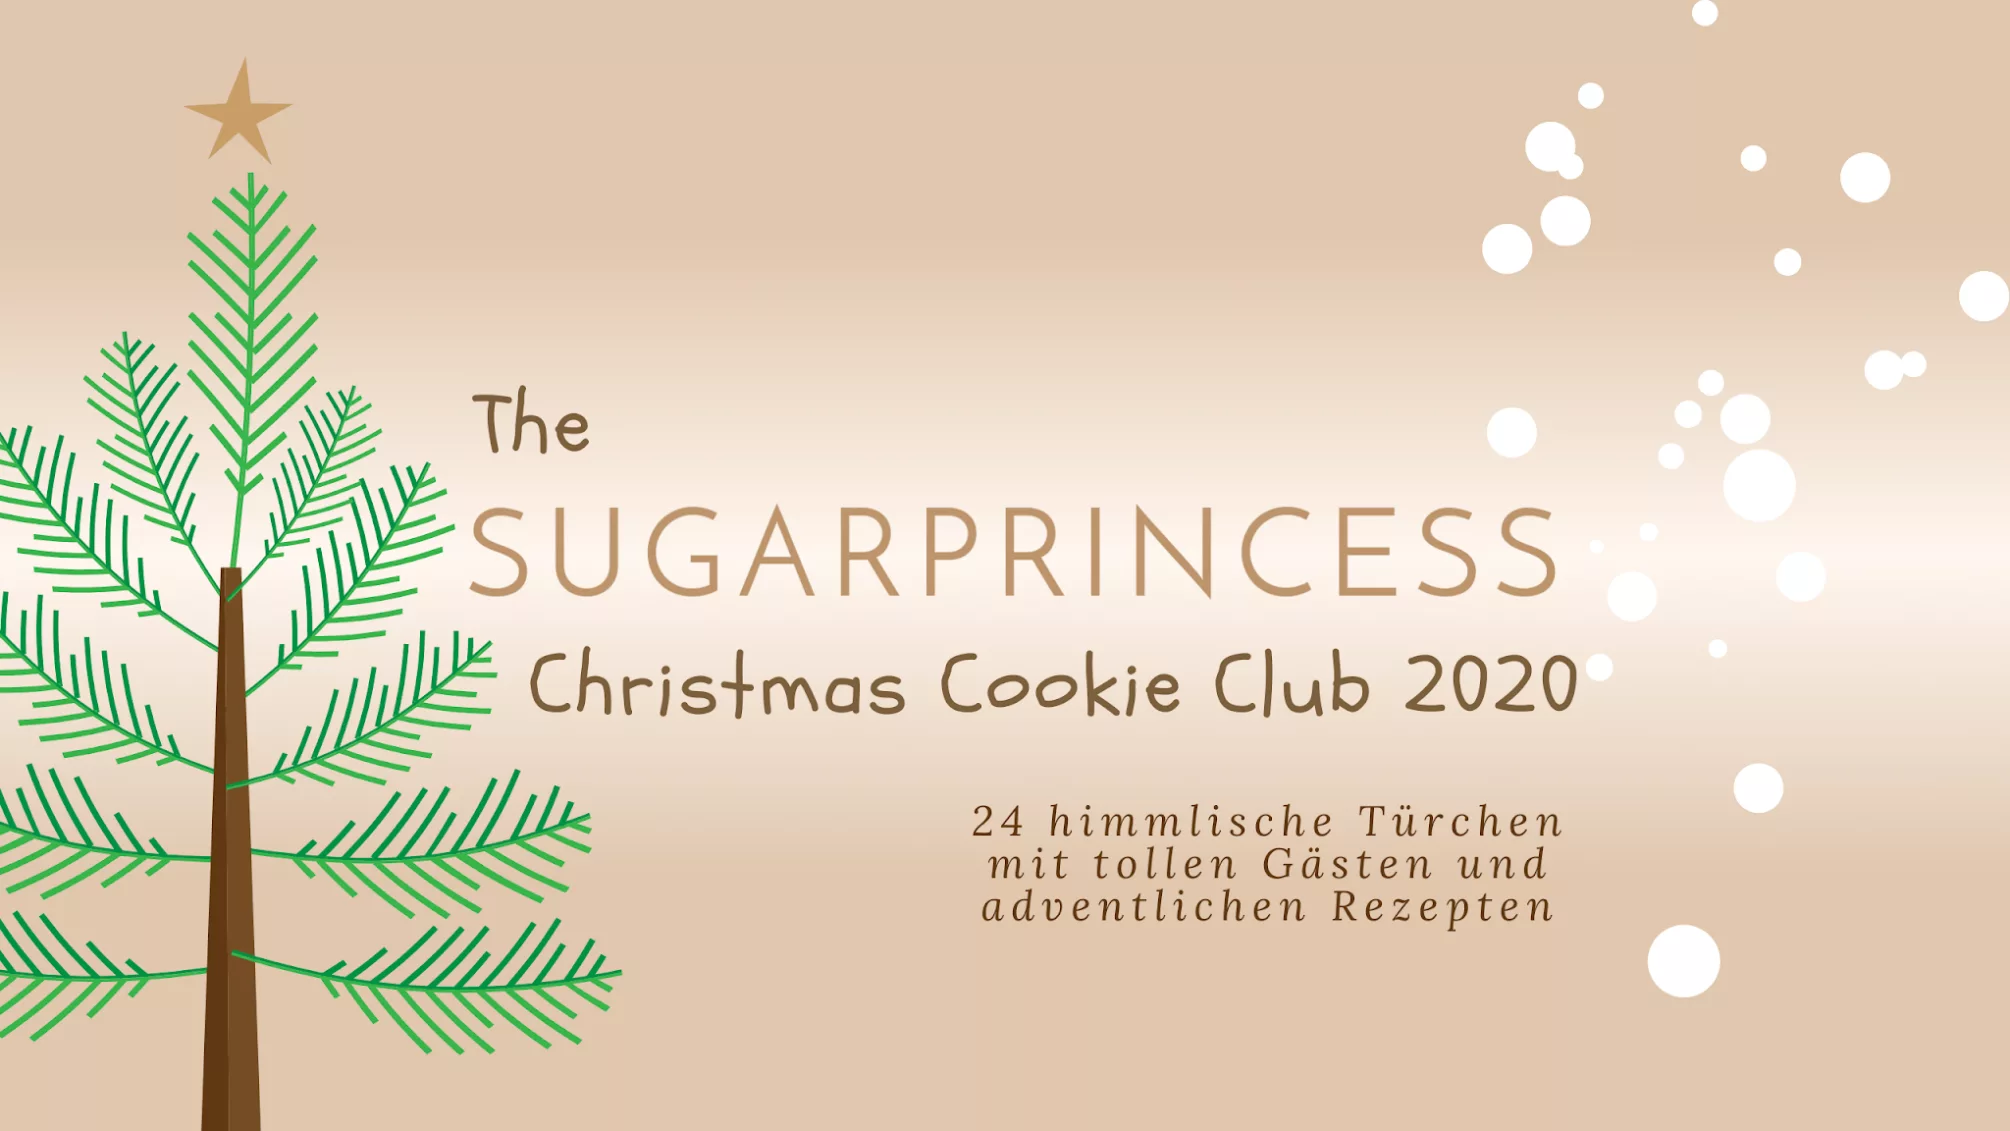 Sugarprincess Christmas Cookie Club 2020